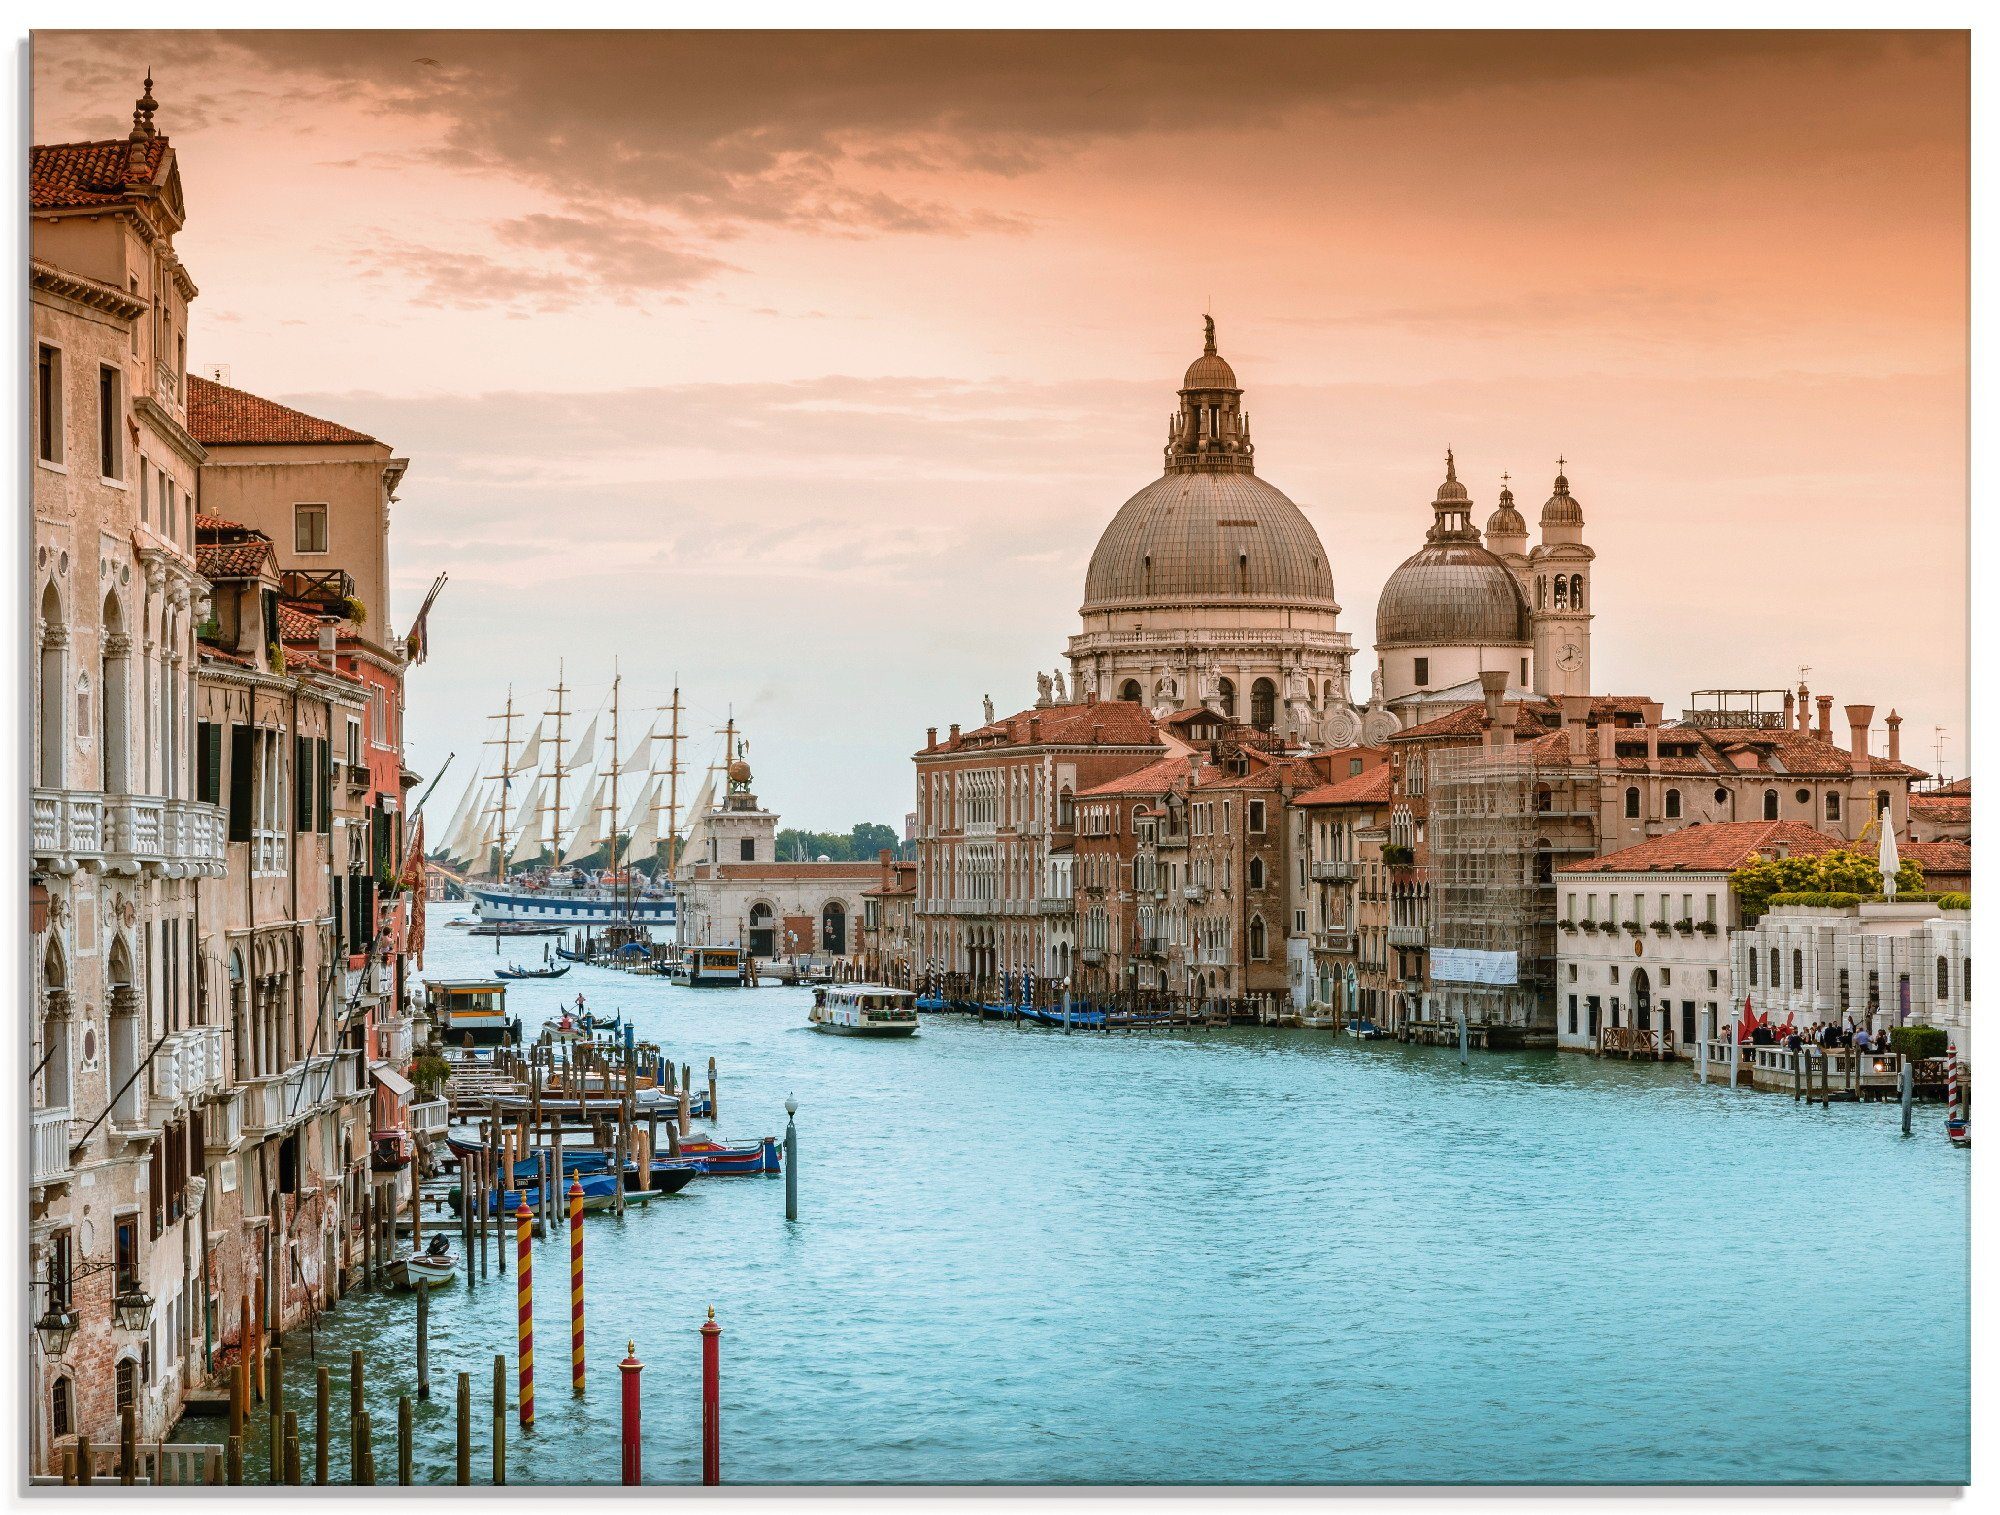 Artland Glasbild Venedig Canal Grande I, Italien (1 St), in verschiedenen Größen